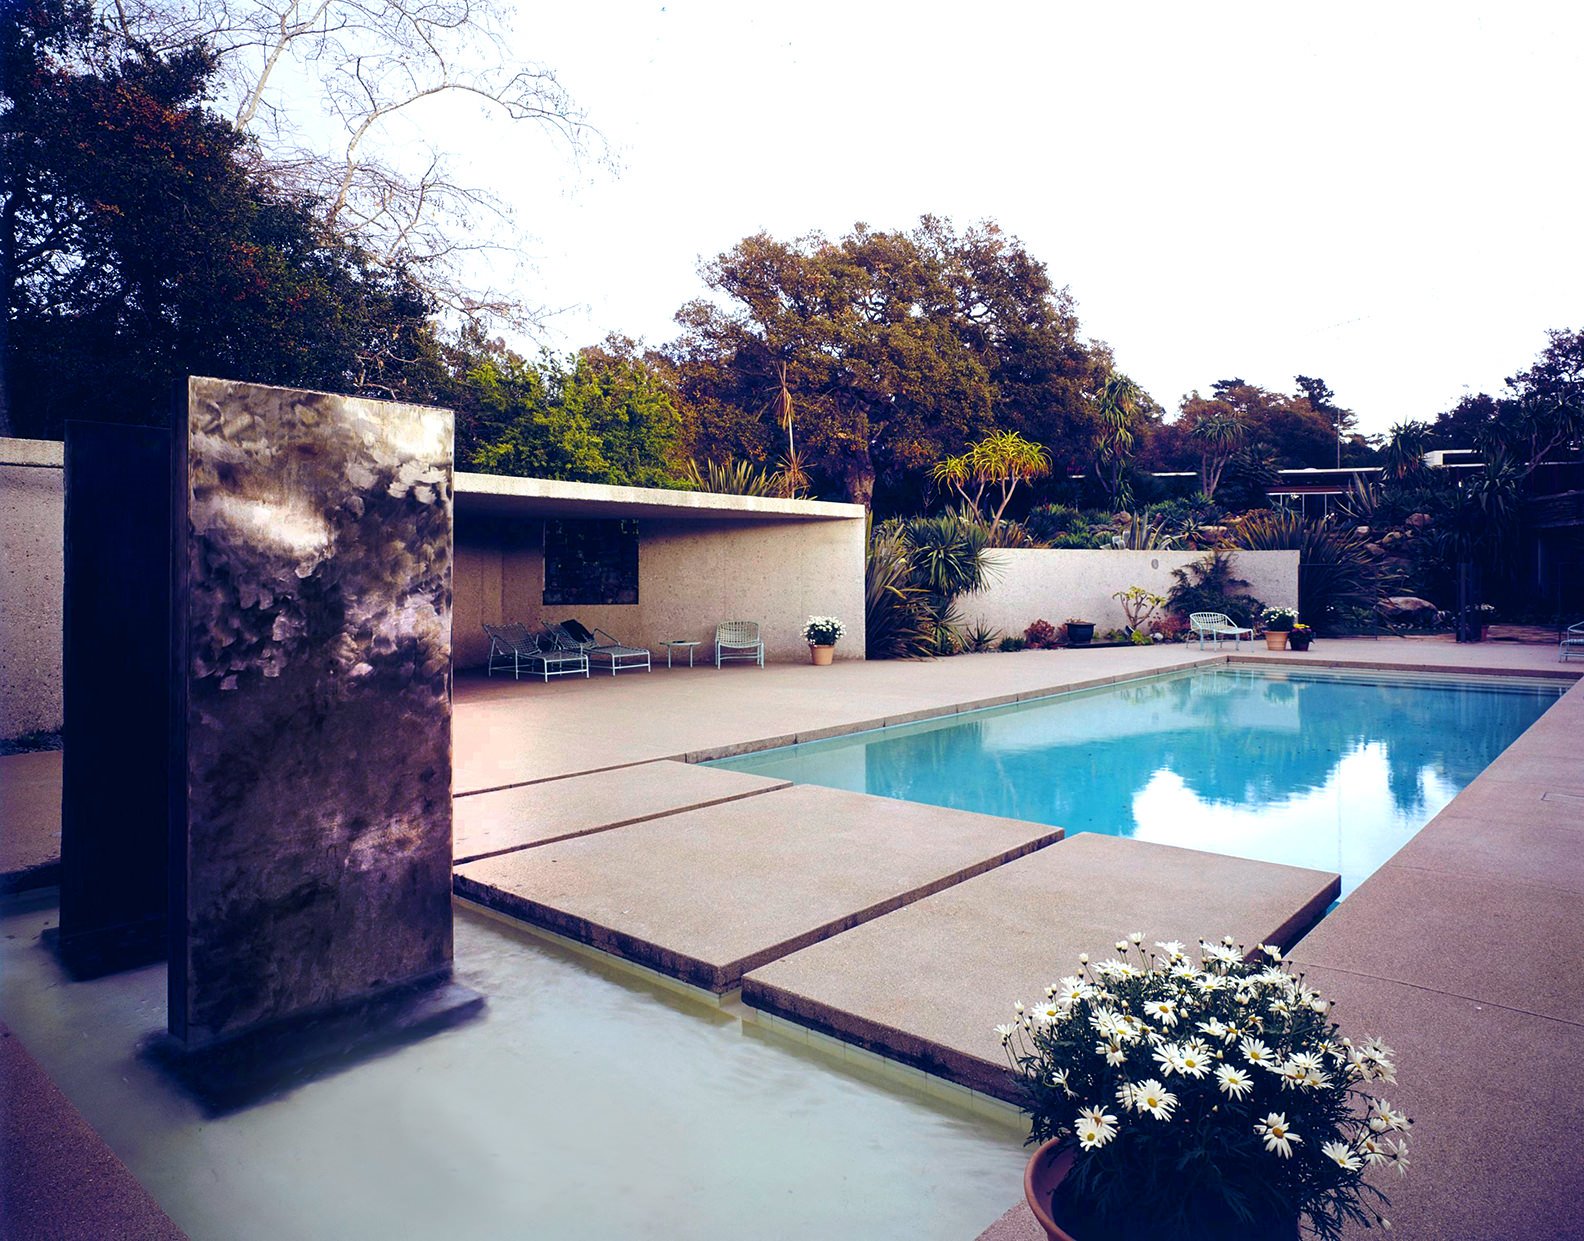 Piscina y porche Casa en Montecido california diseñada por Richard Neutra